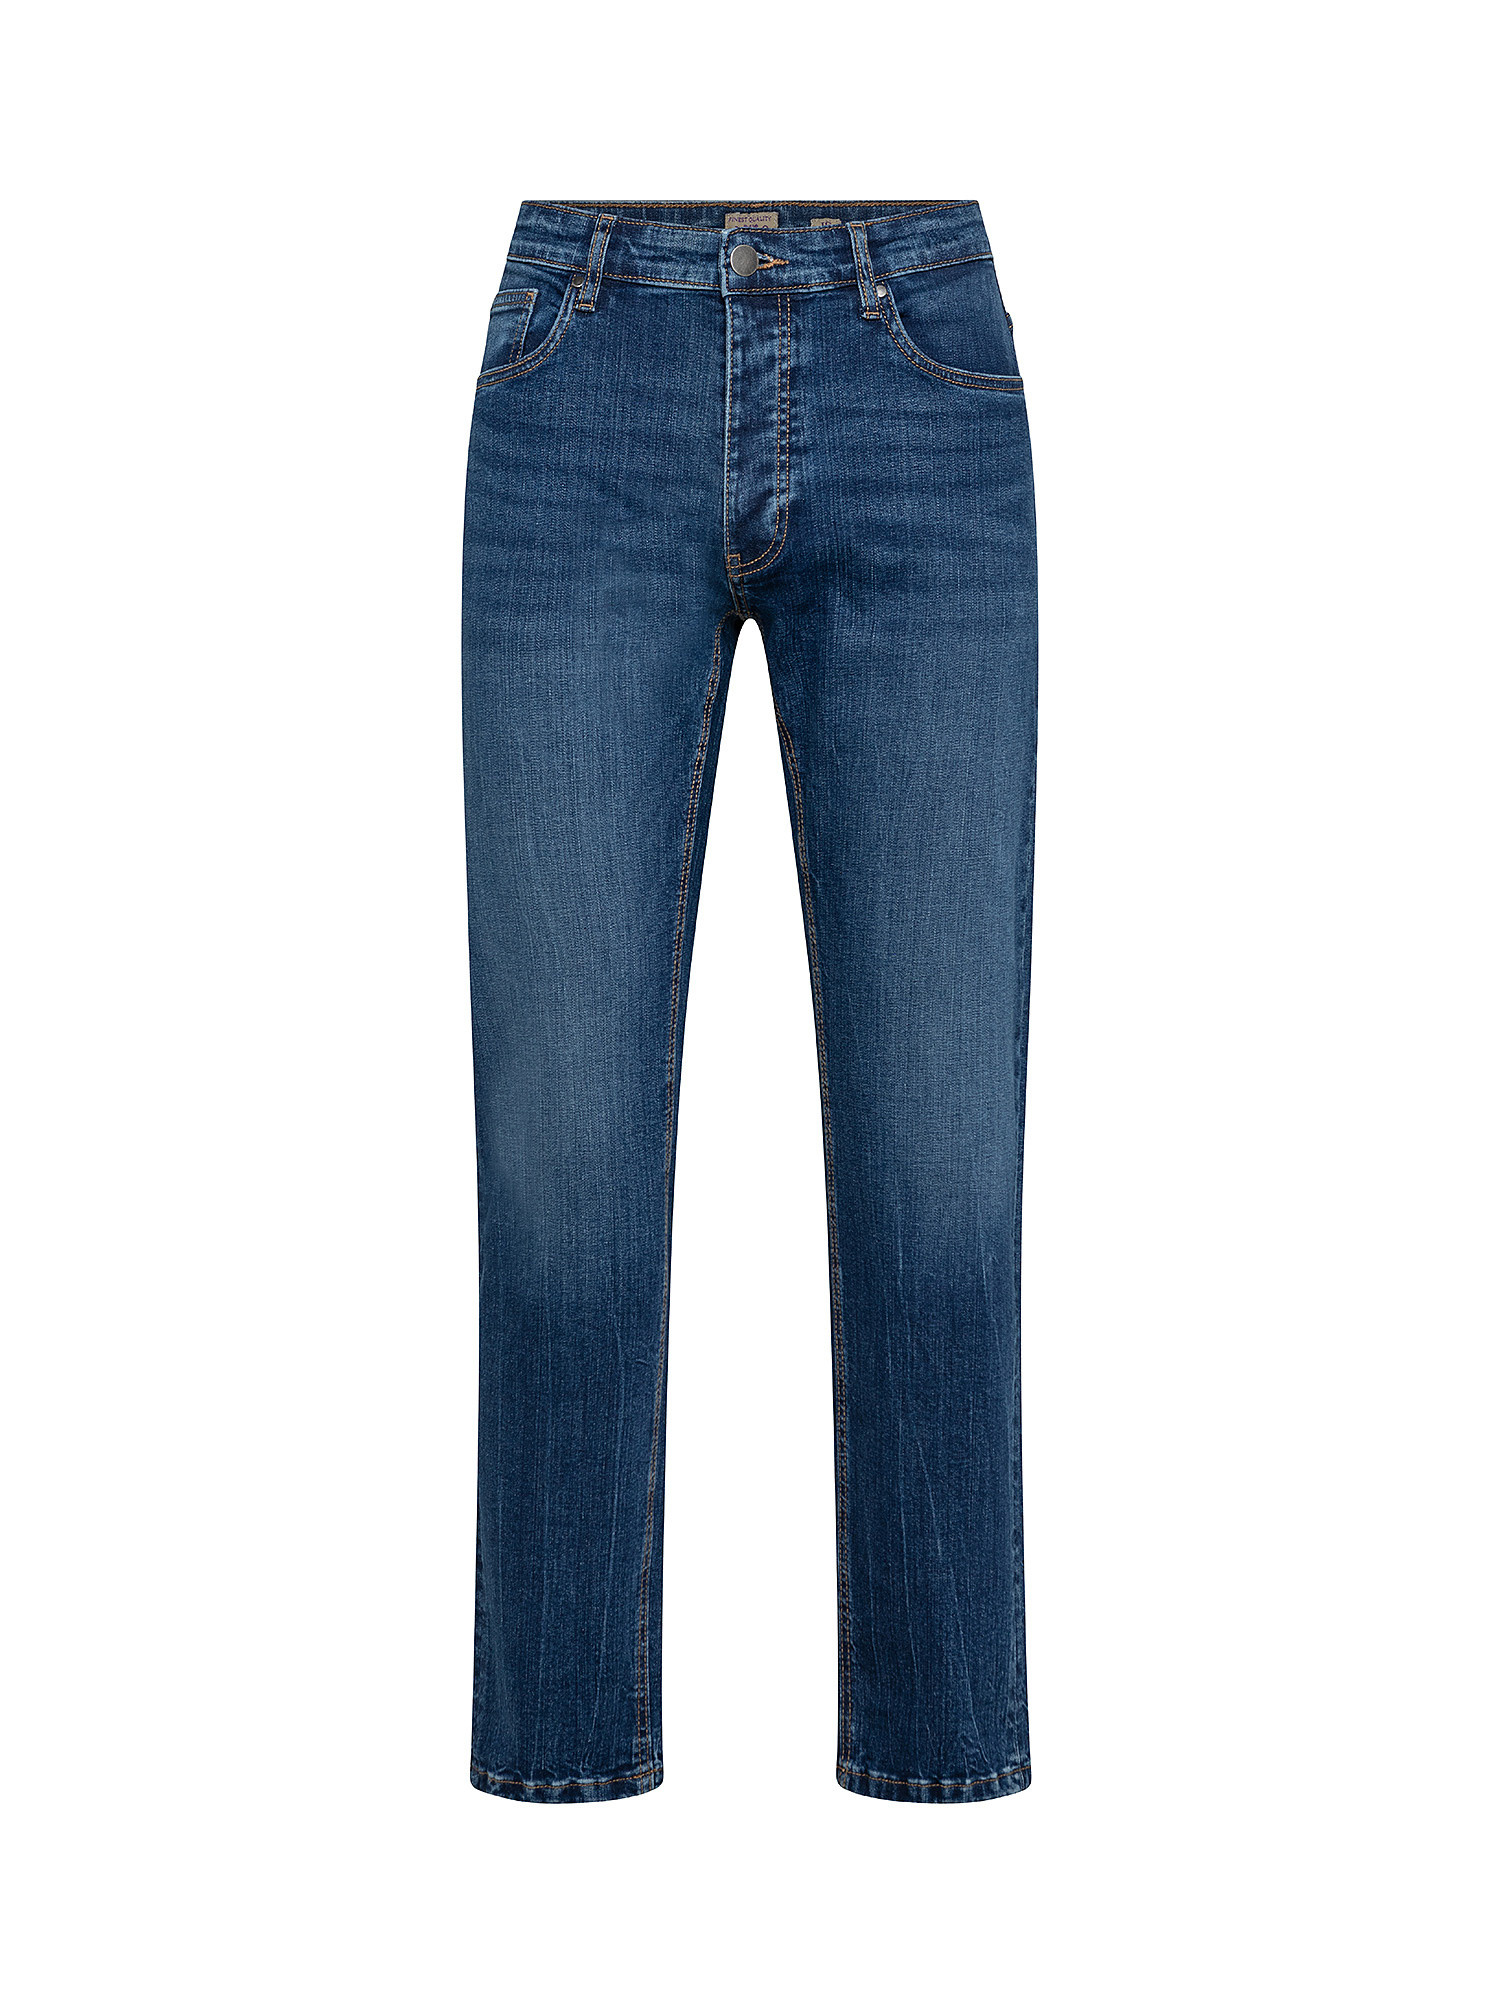 Five pocket jeans, Light Blue, large image number 0